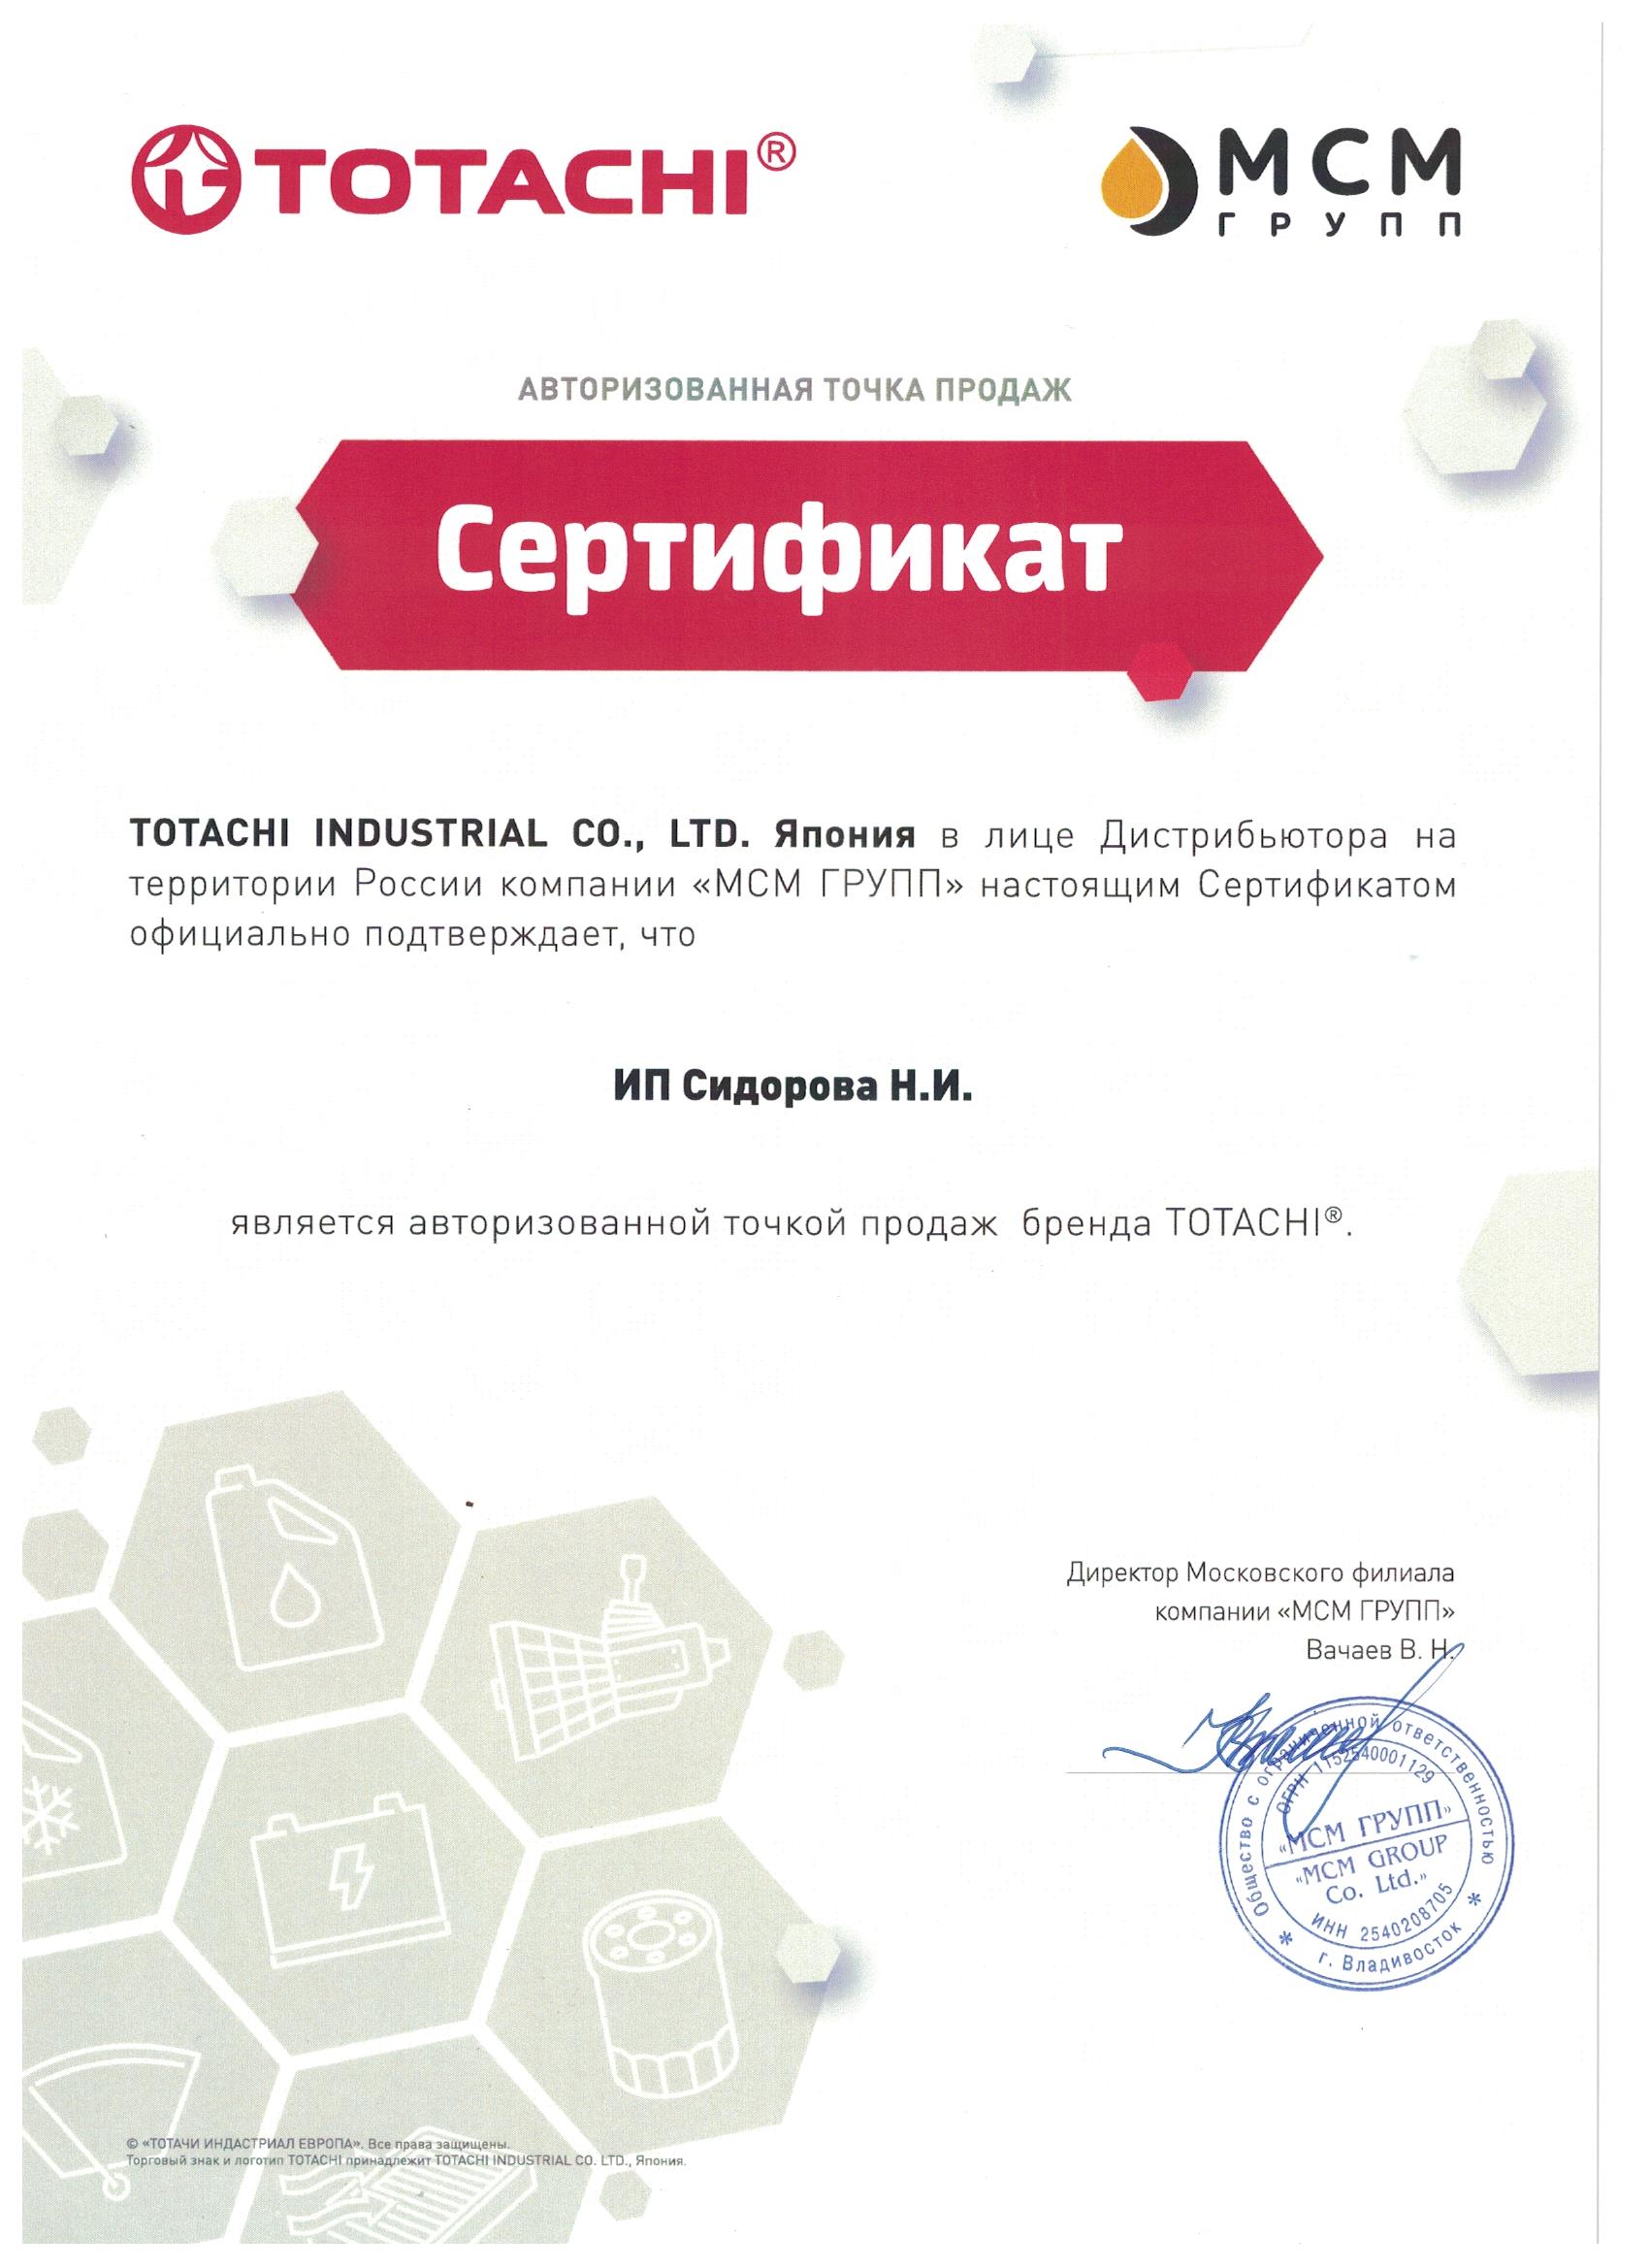 сертификат totachi